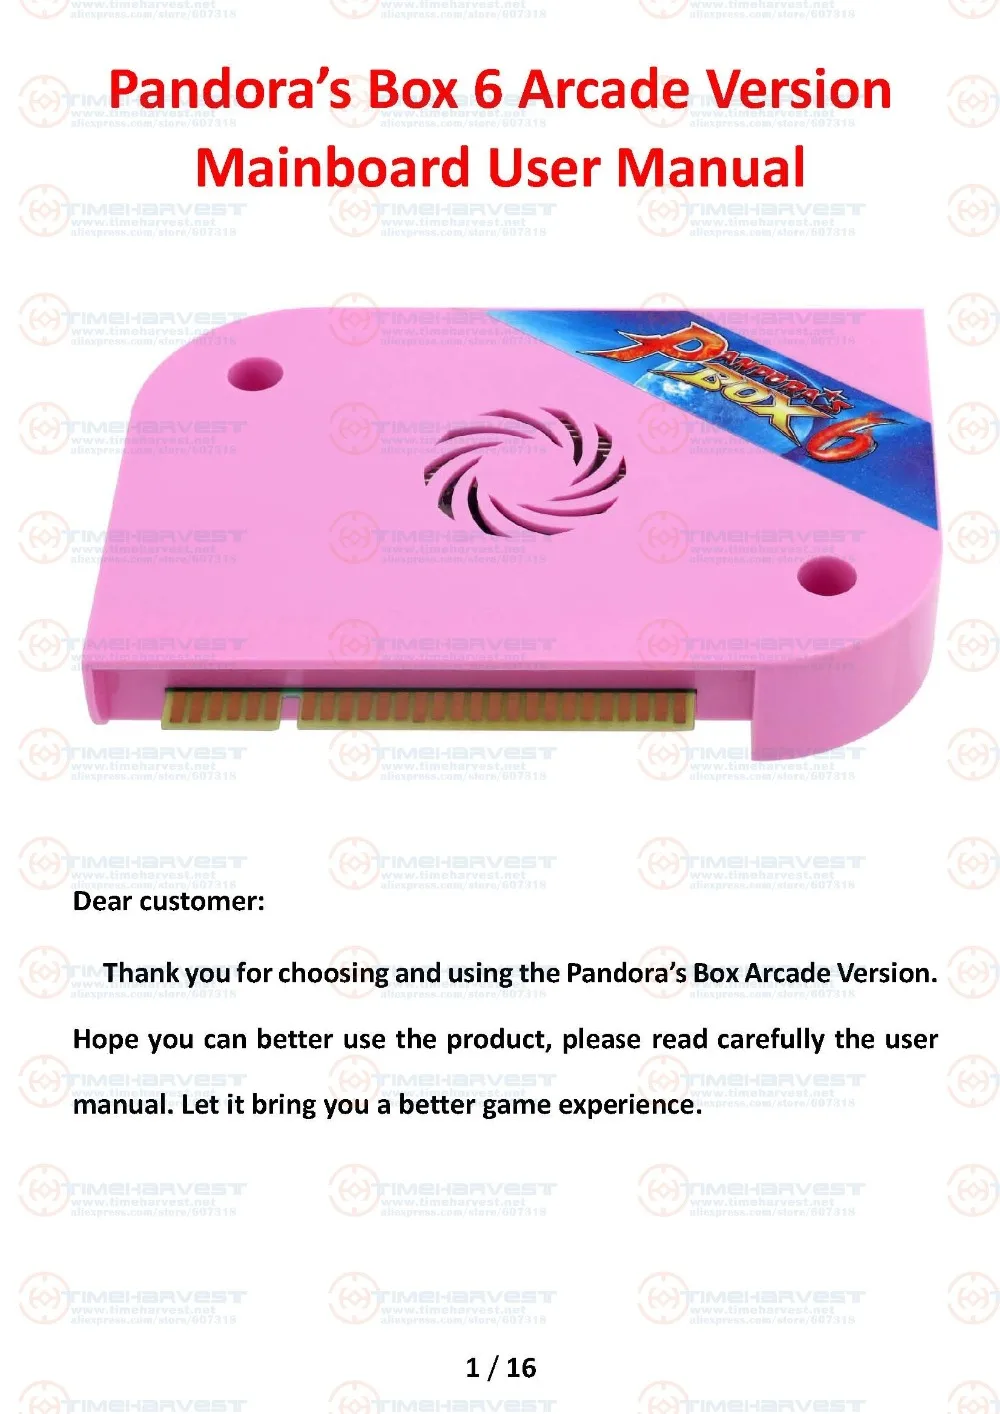 Новейшая оригинальная коробка Pandora 6 JAMMA версия 1300 в 1 игровая доска аркадная версия для аркадной игры Marchine кабинета